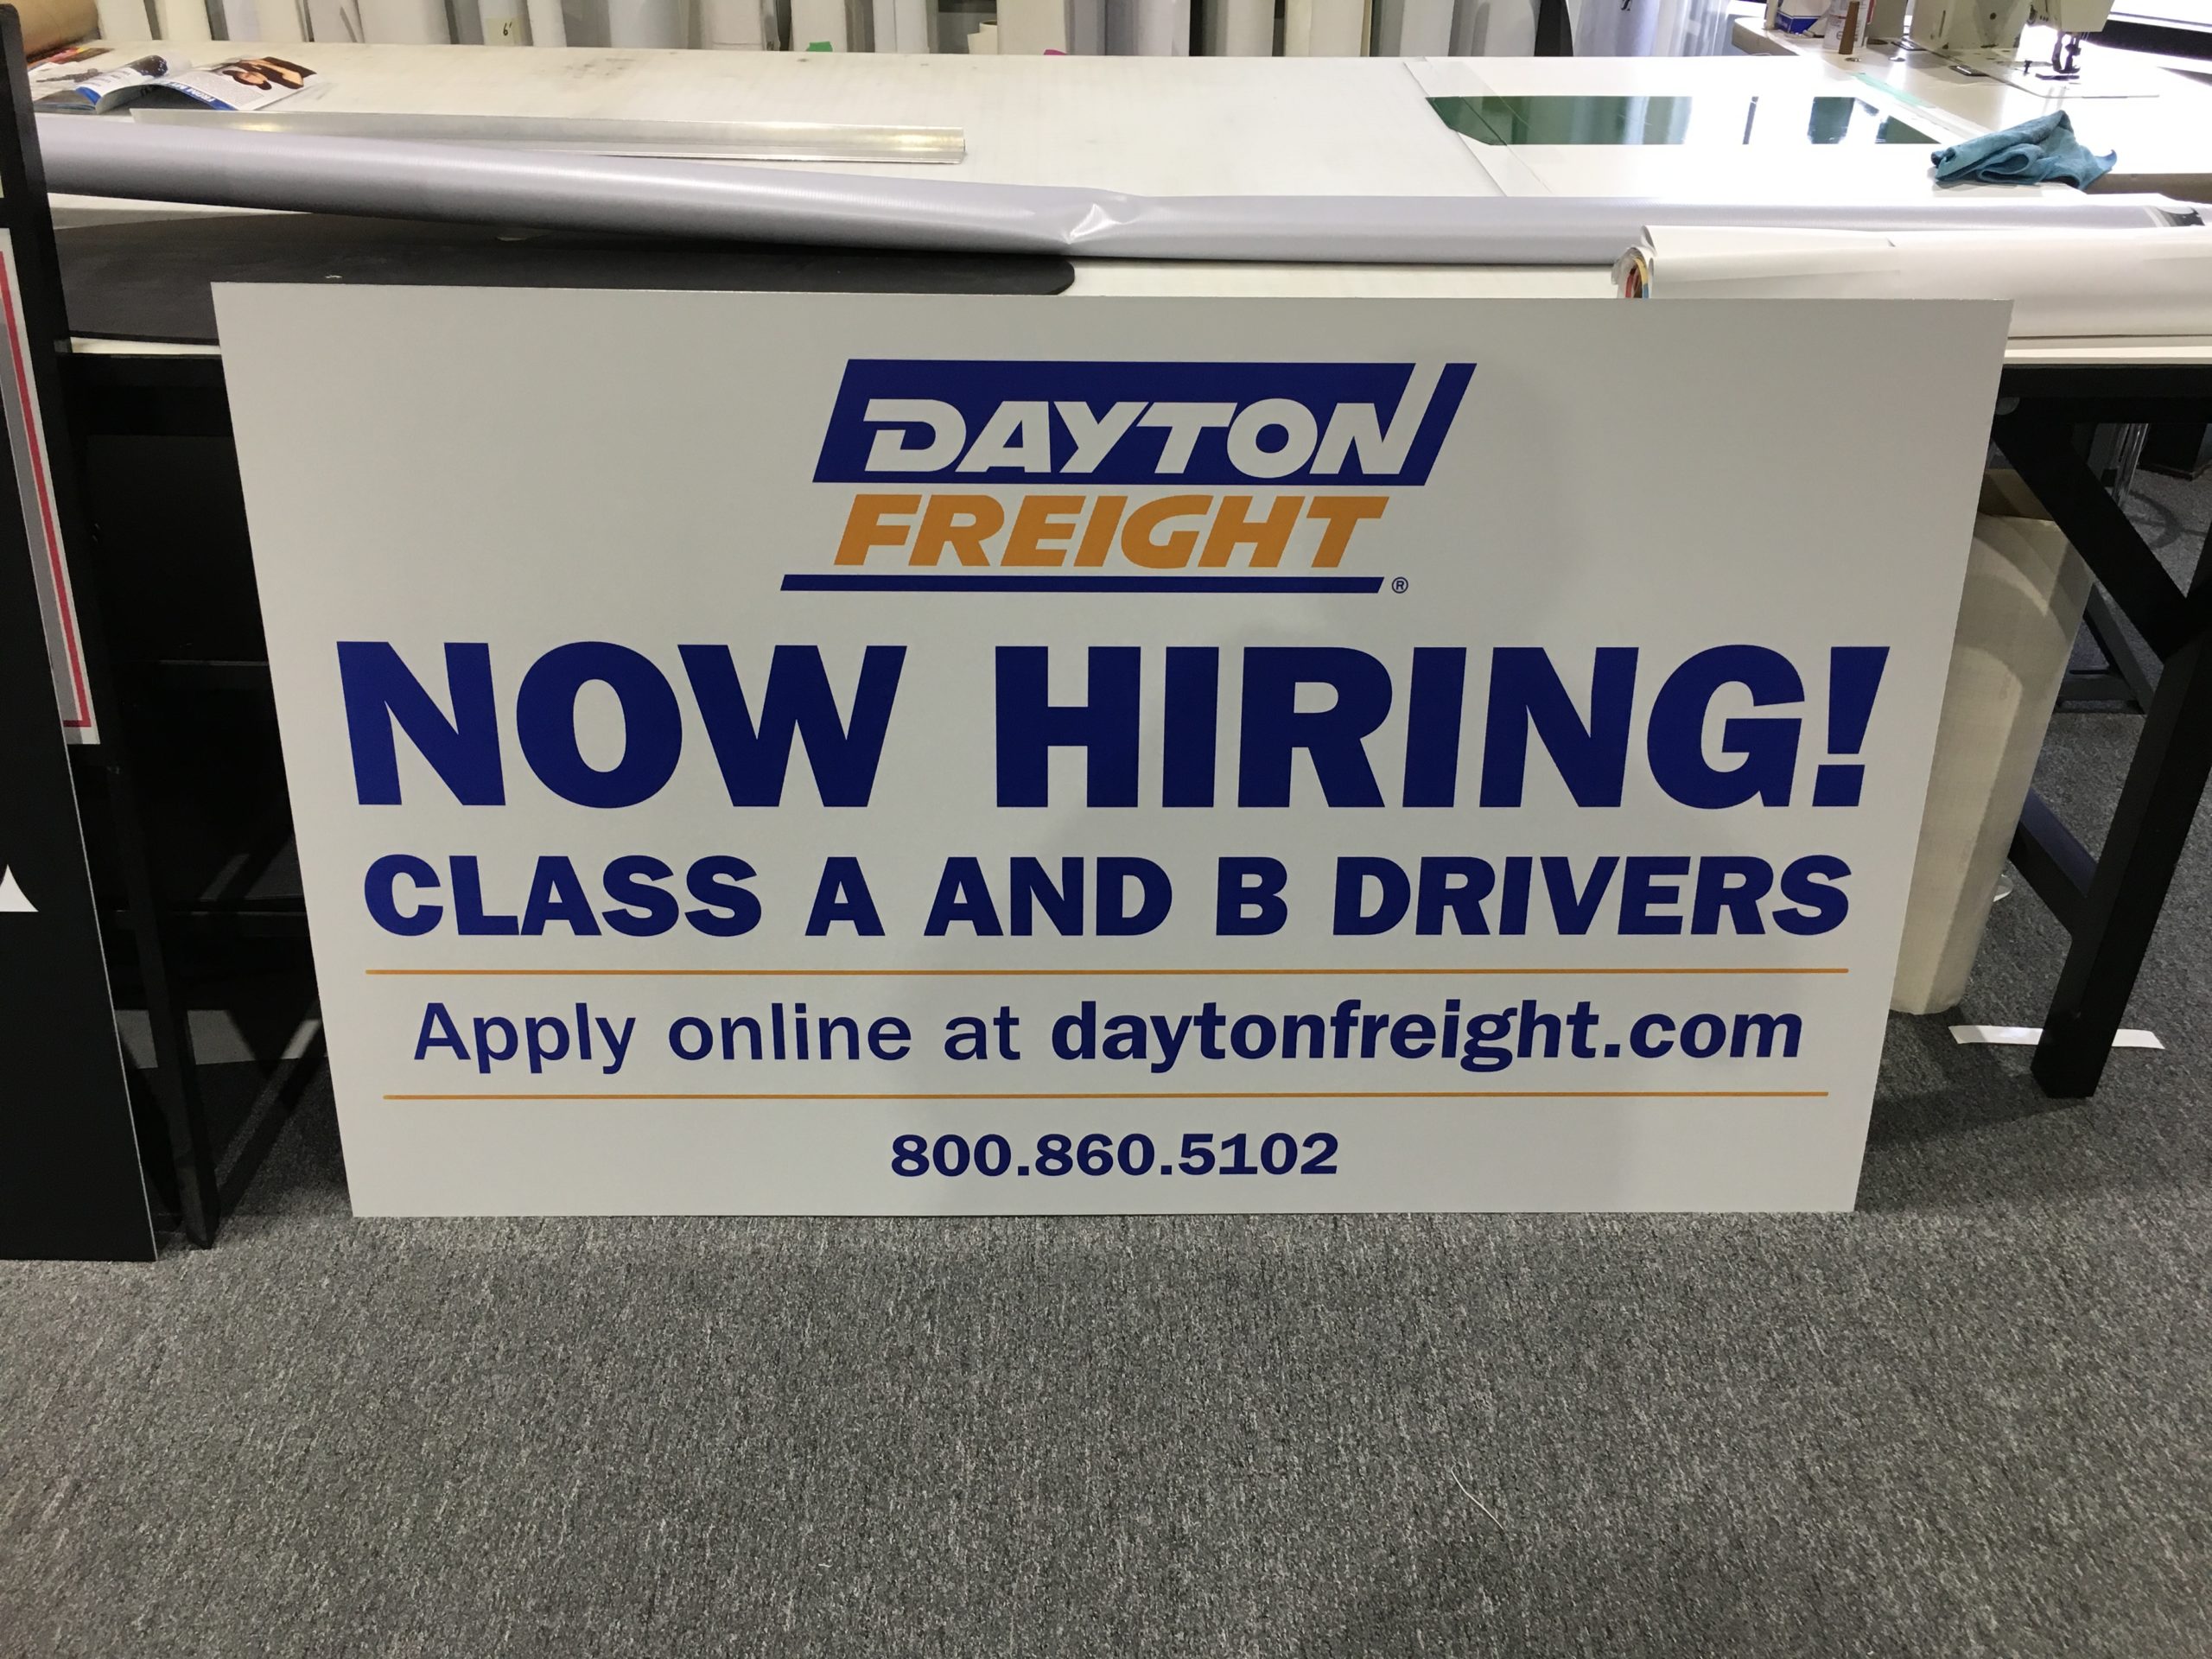 Dayton Freight Hiring Signs